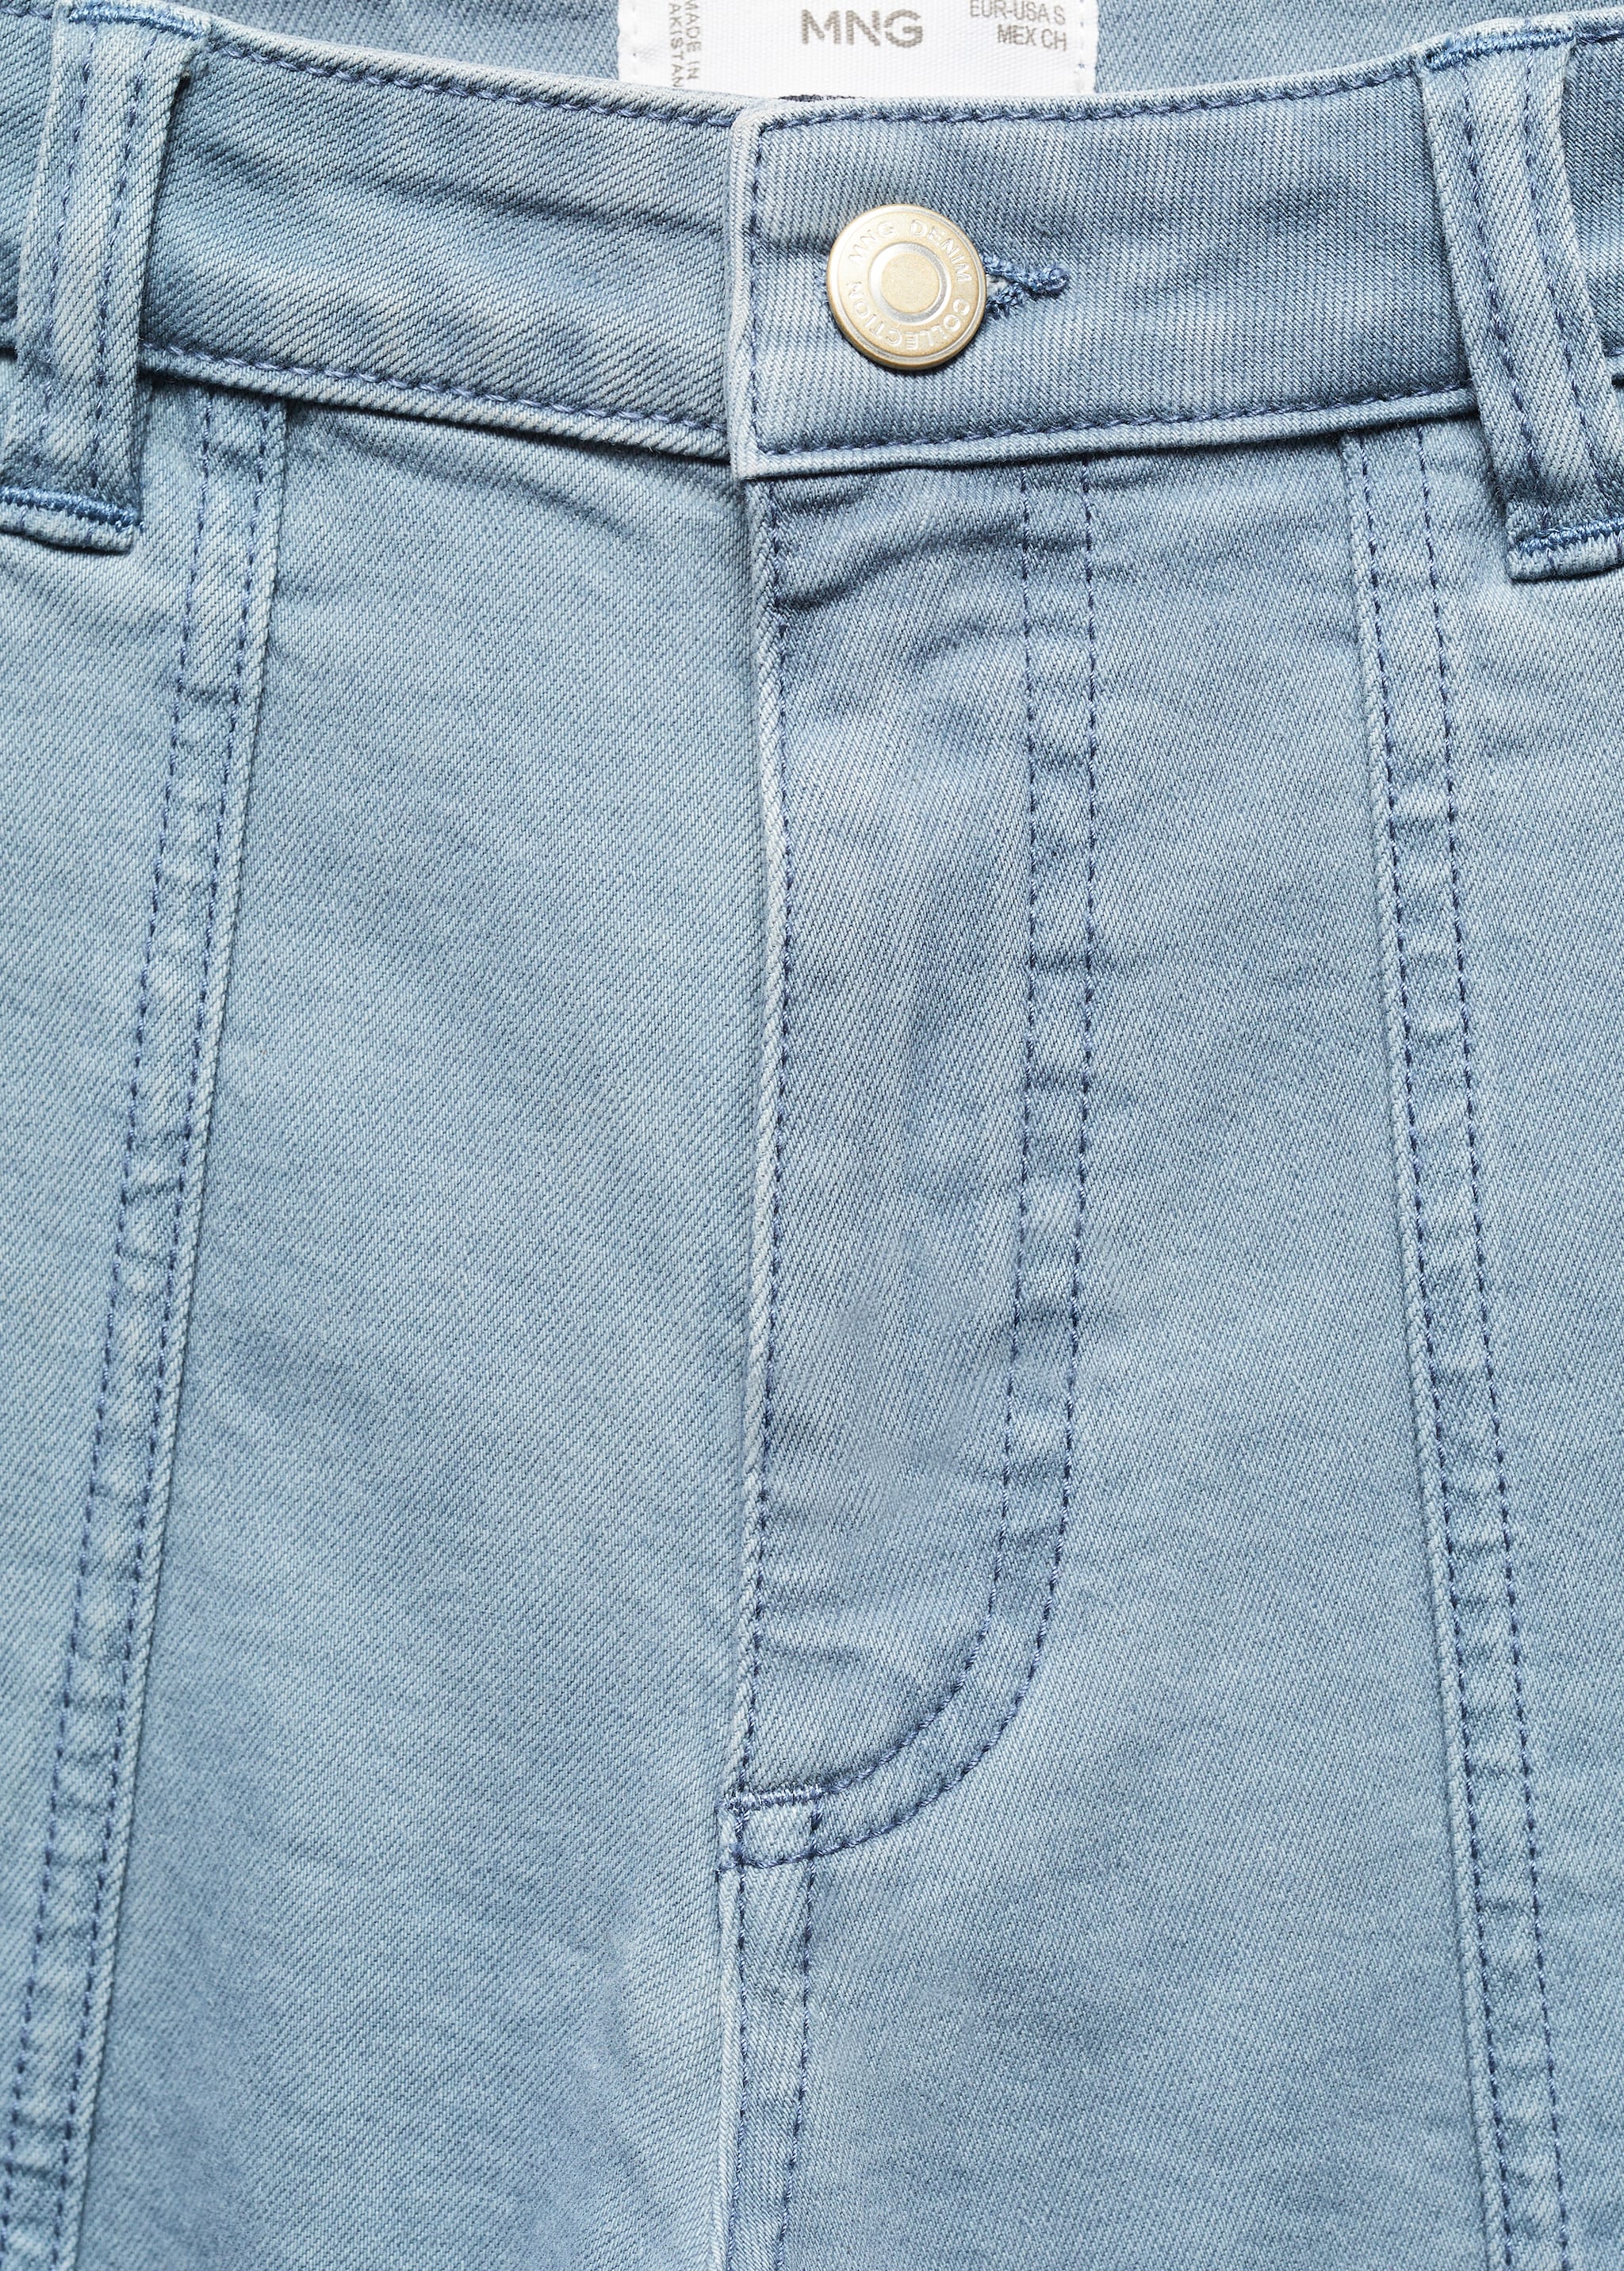 Culotte-Hose mit Taschen - Detail des Artikels 8